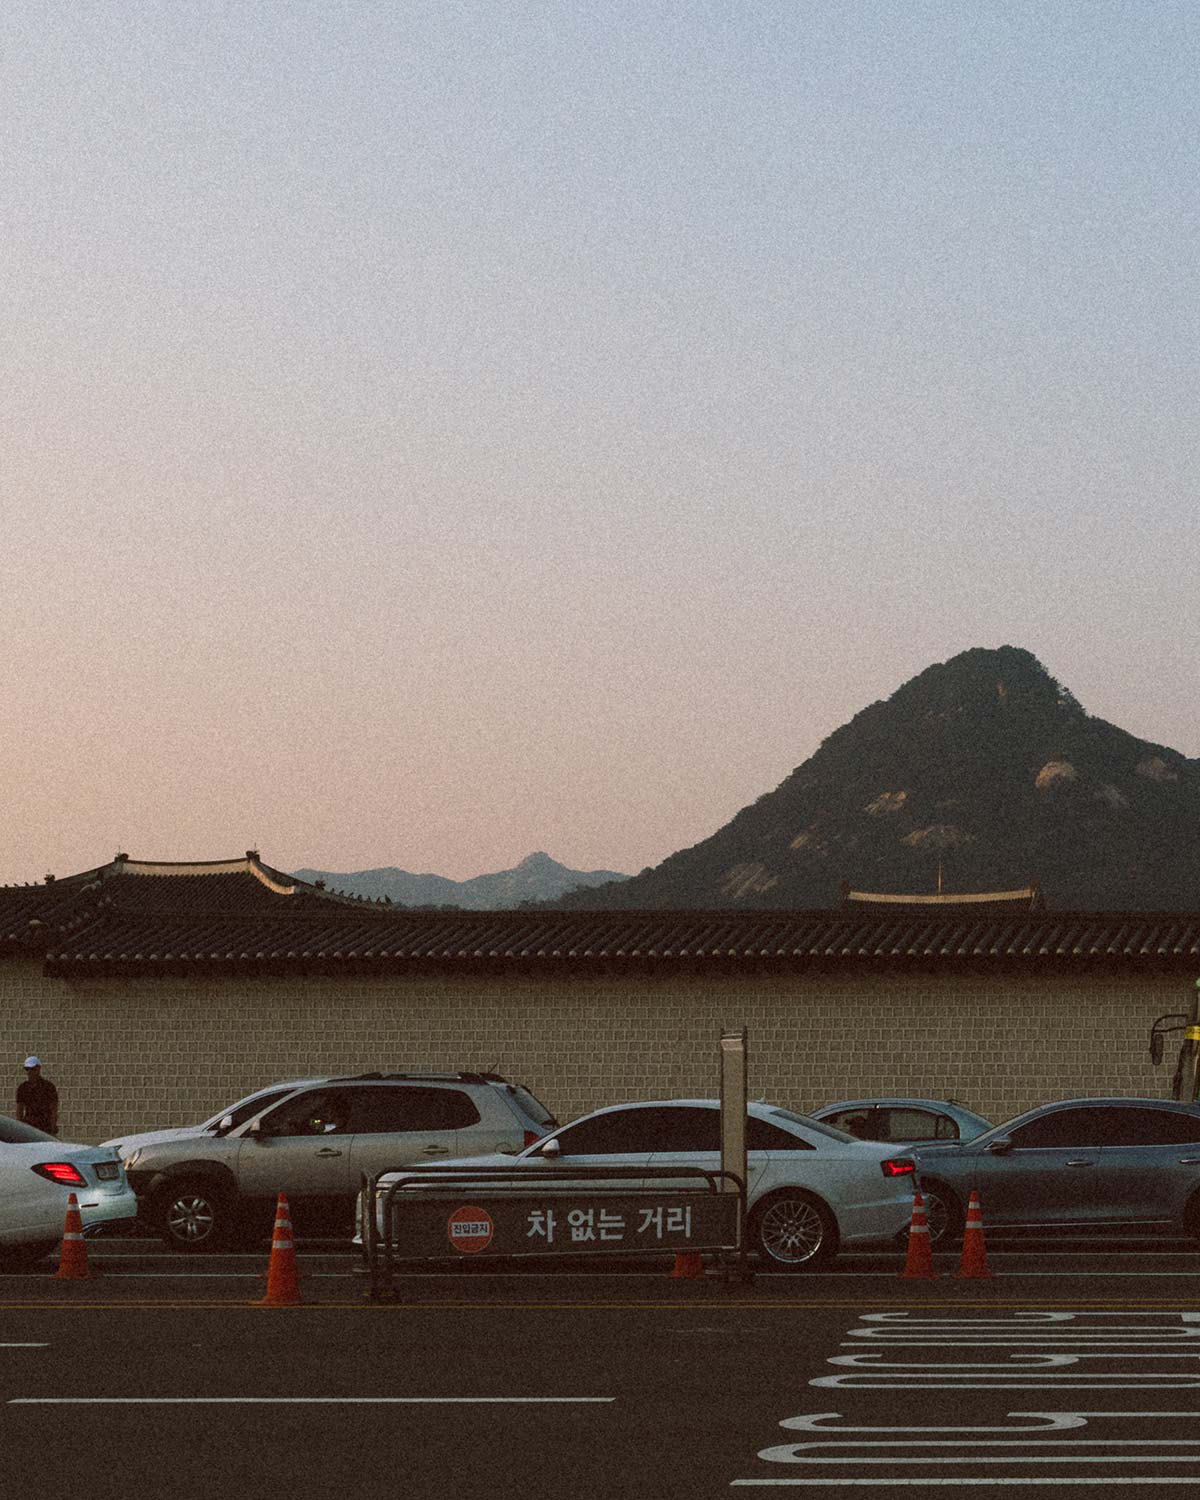 Korean car traffic during sunset